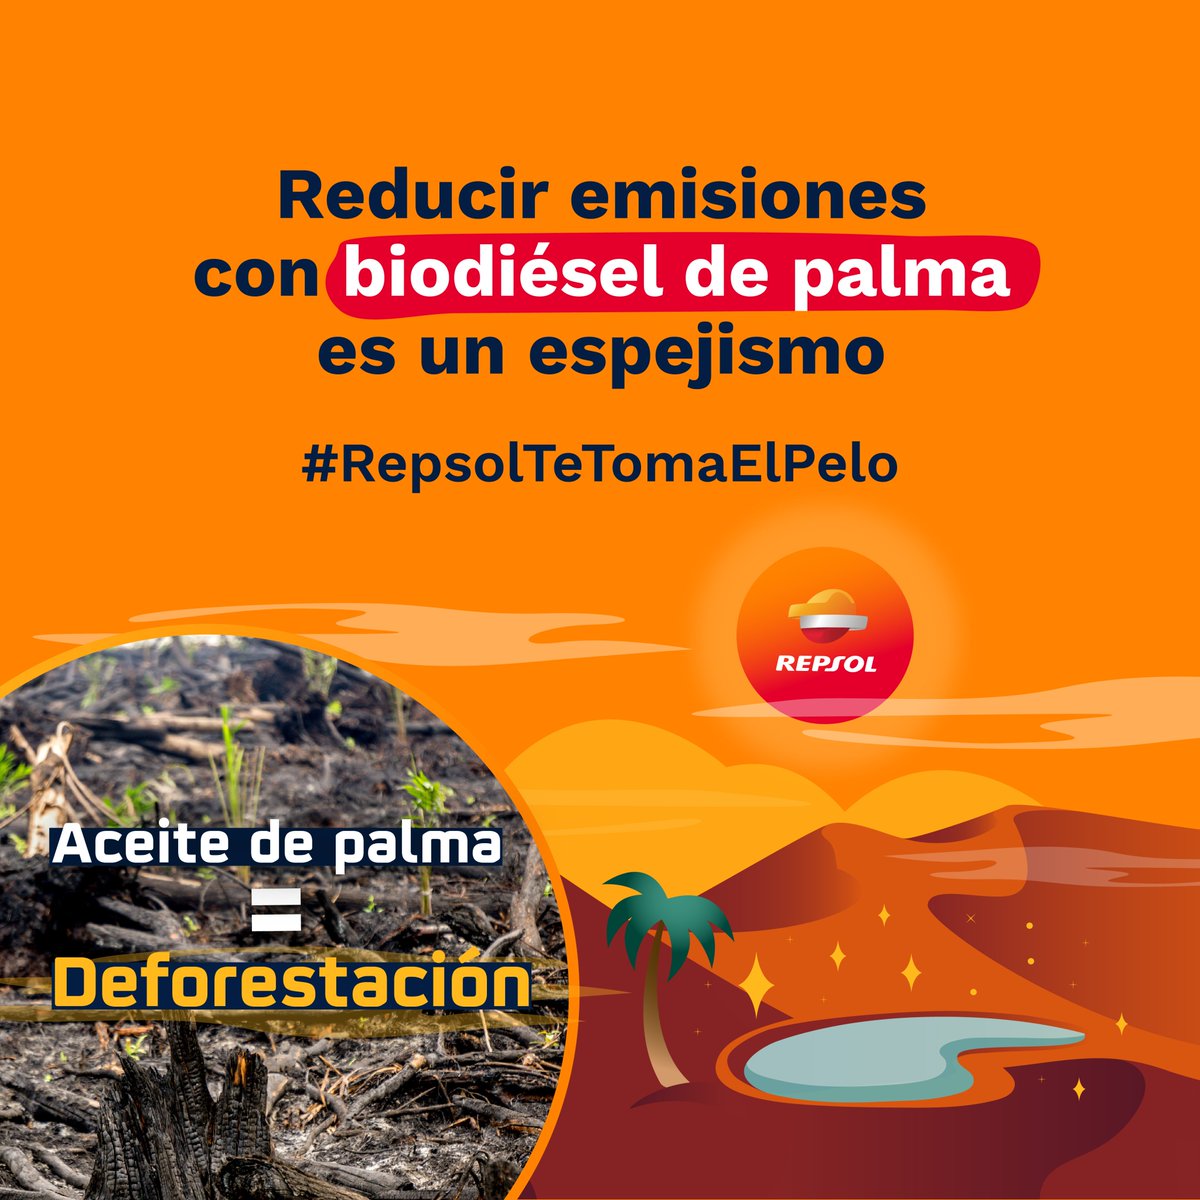 🧙🏾‍♂️ ¿Baja huella de carbono? ✨

Los biocombustibles de @Repsol no son trazables, no se puede asegurar que no contengan aceite de palma de la deforestación. Lo excluye de su cálculo de huella de carbono y engaña a las consumidoras. ❌

#RepsolTeTomaElPelo
#DenunciamosARepsol